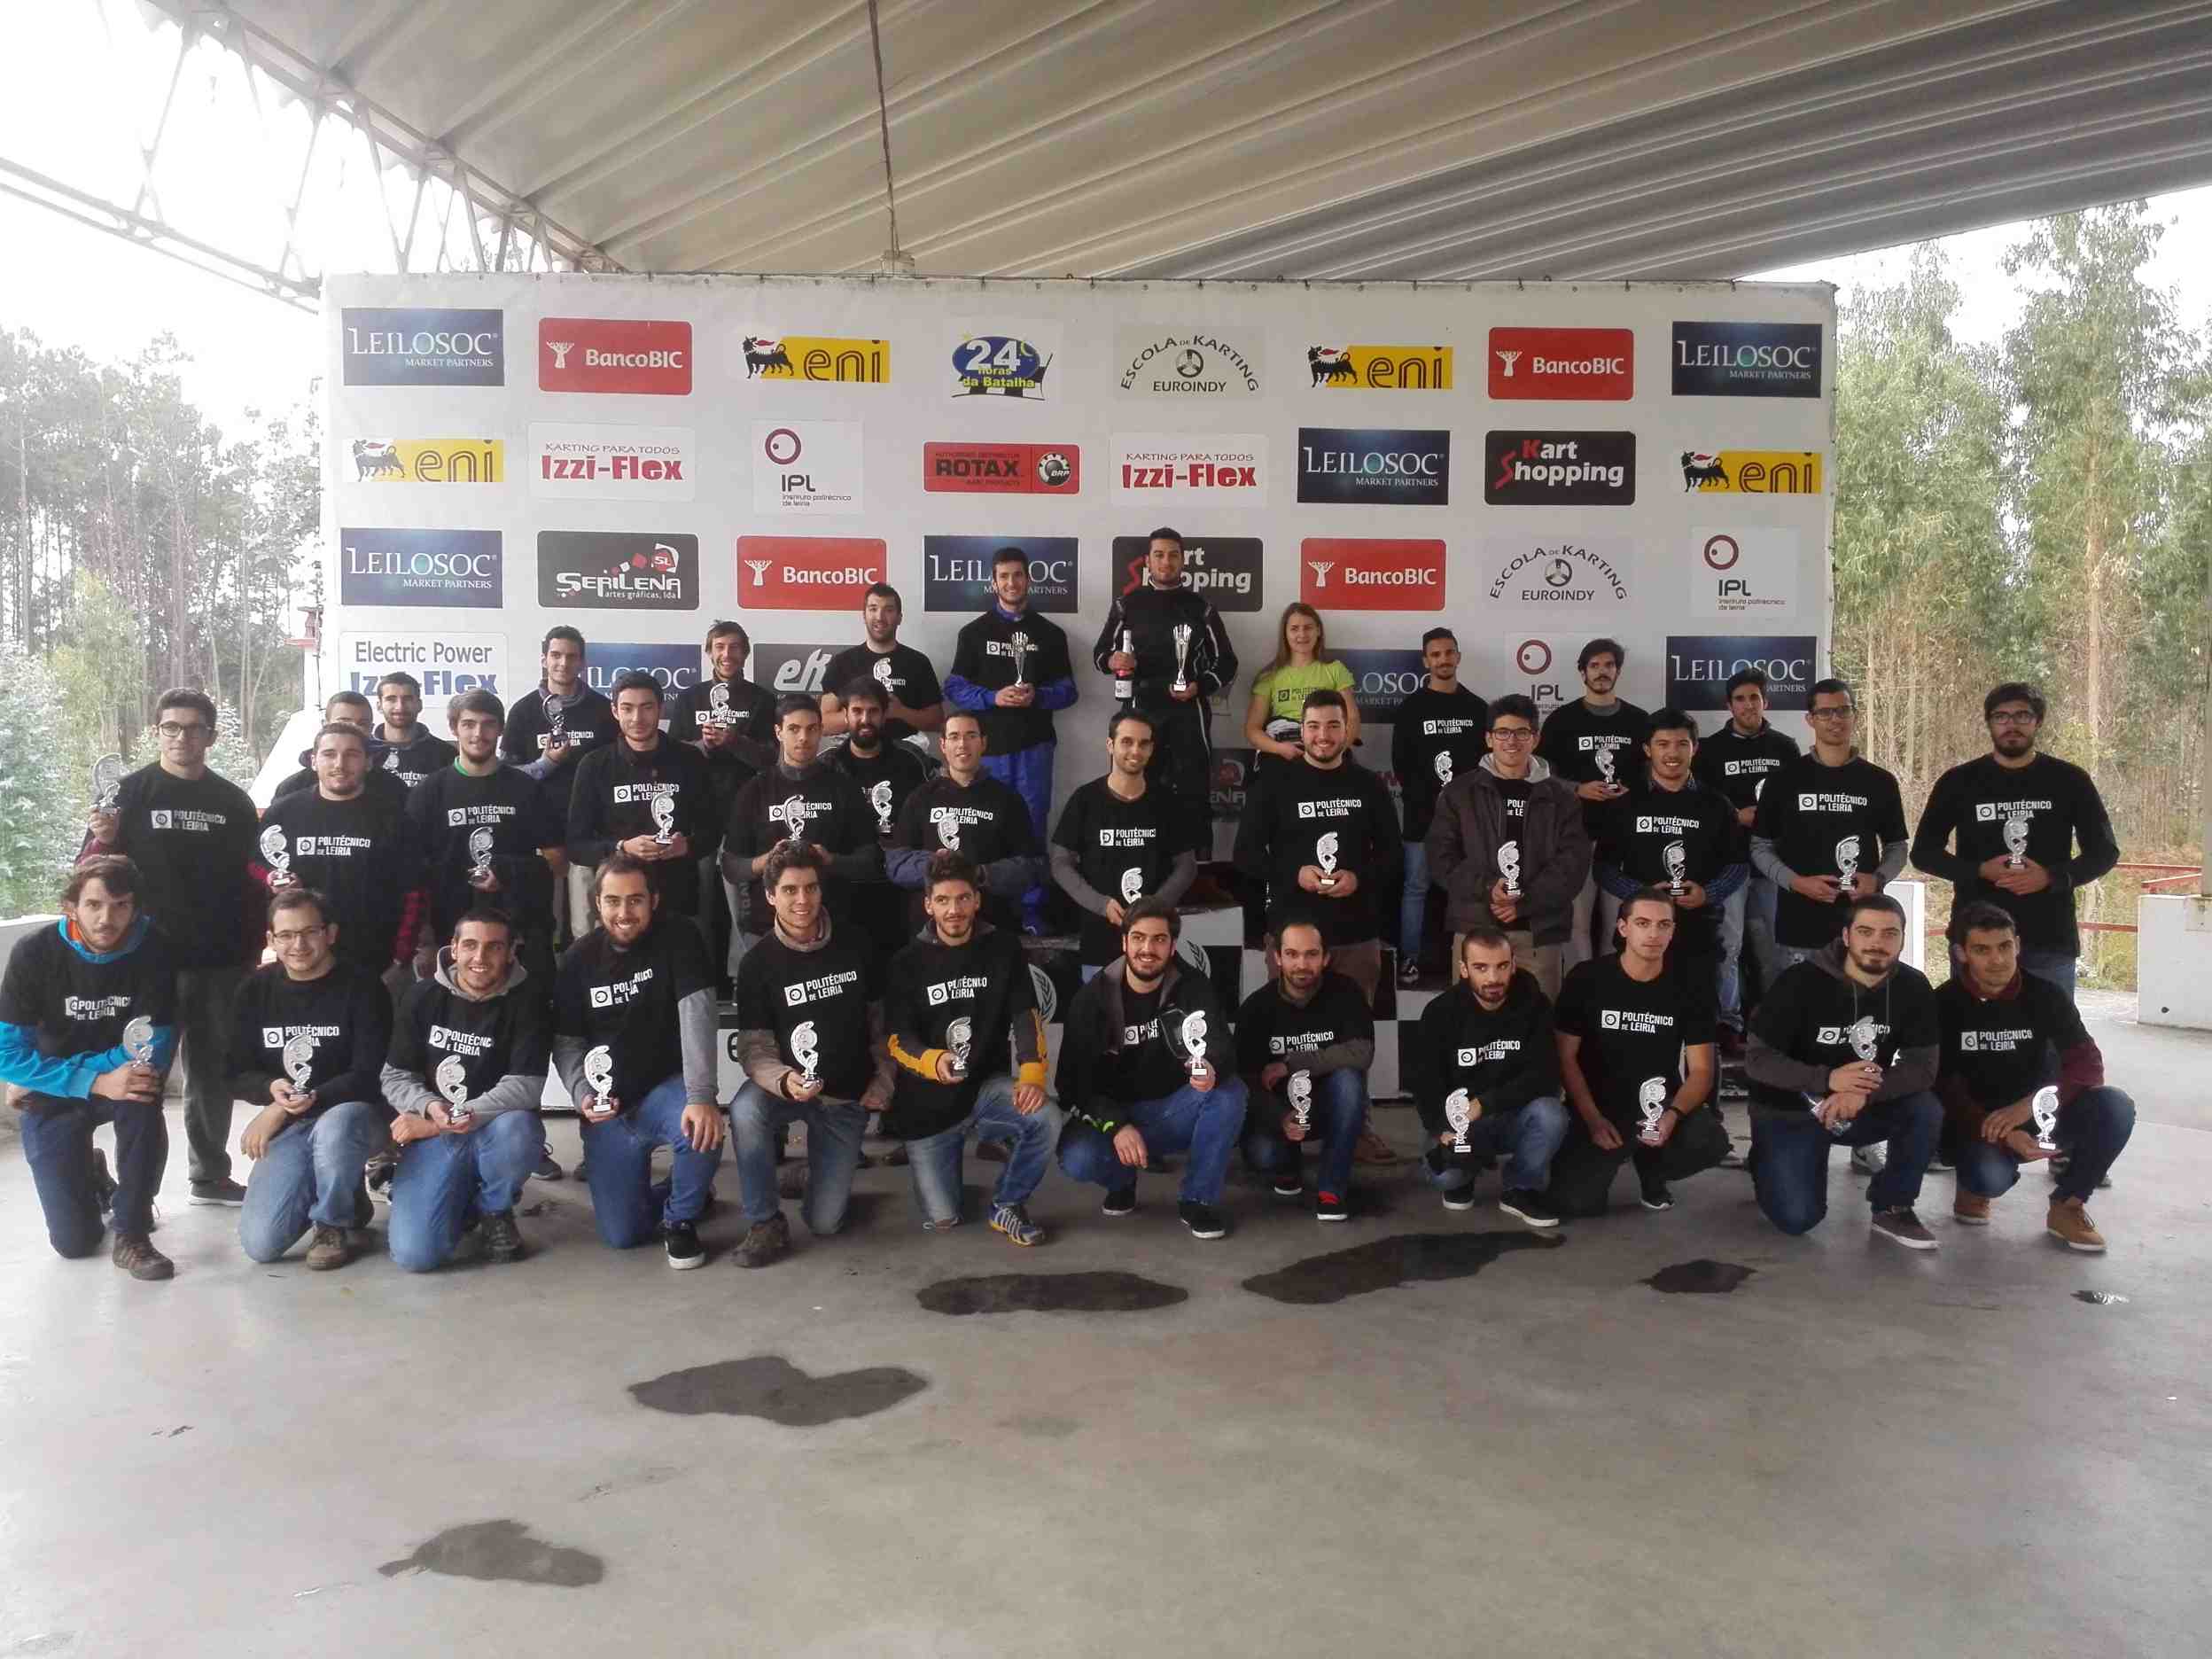 VIII Troféu de Karting do Politécnico de Leiria52